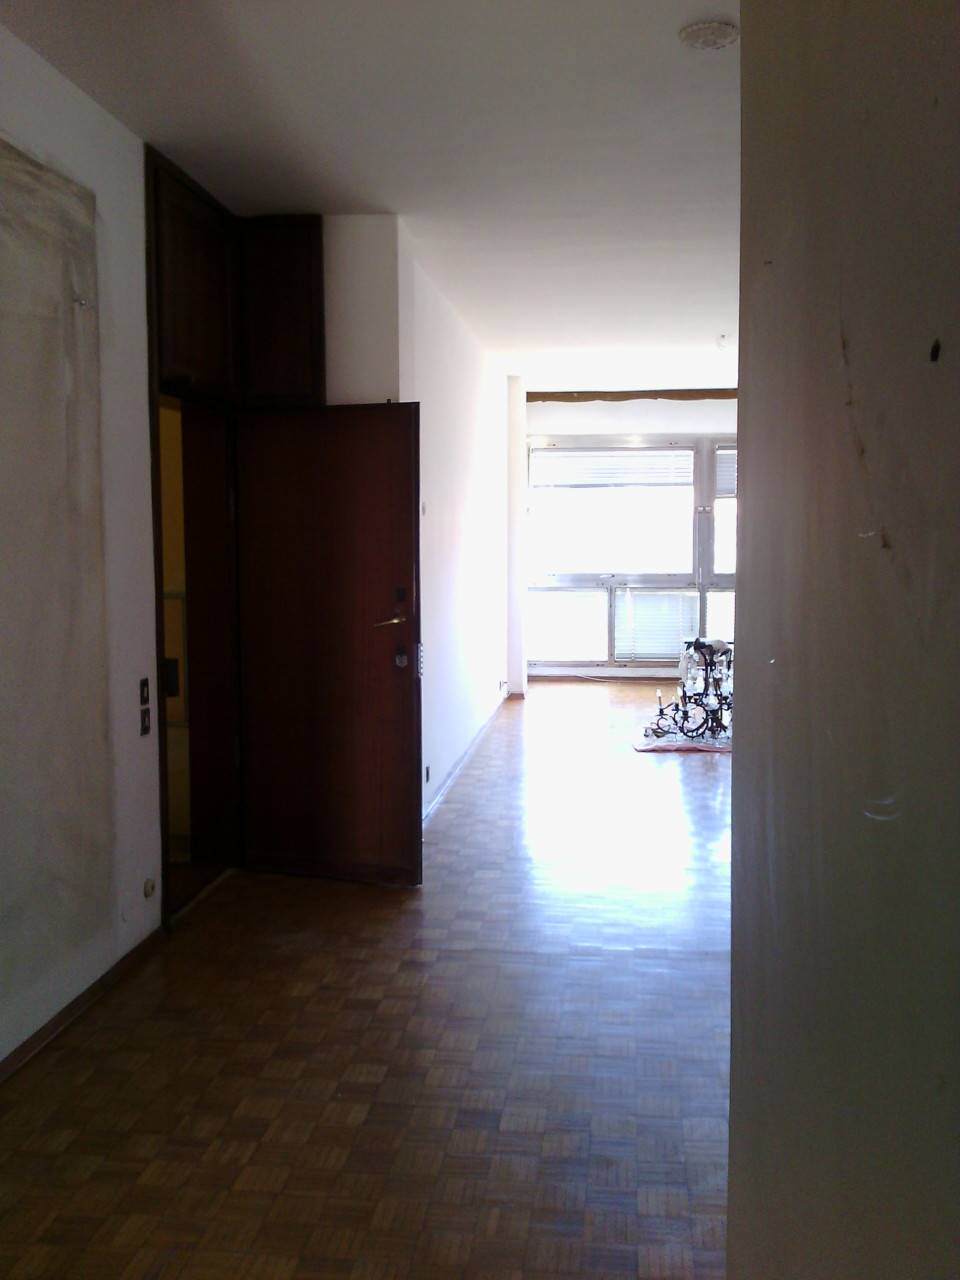 Appartamento in affitto a Tortona, 5 locali, prezzo € 500 | CambioCasa.it